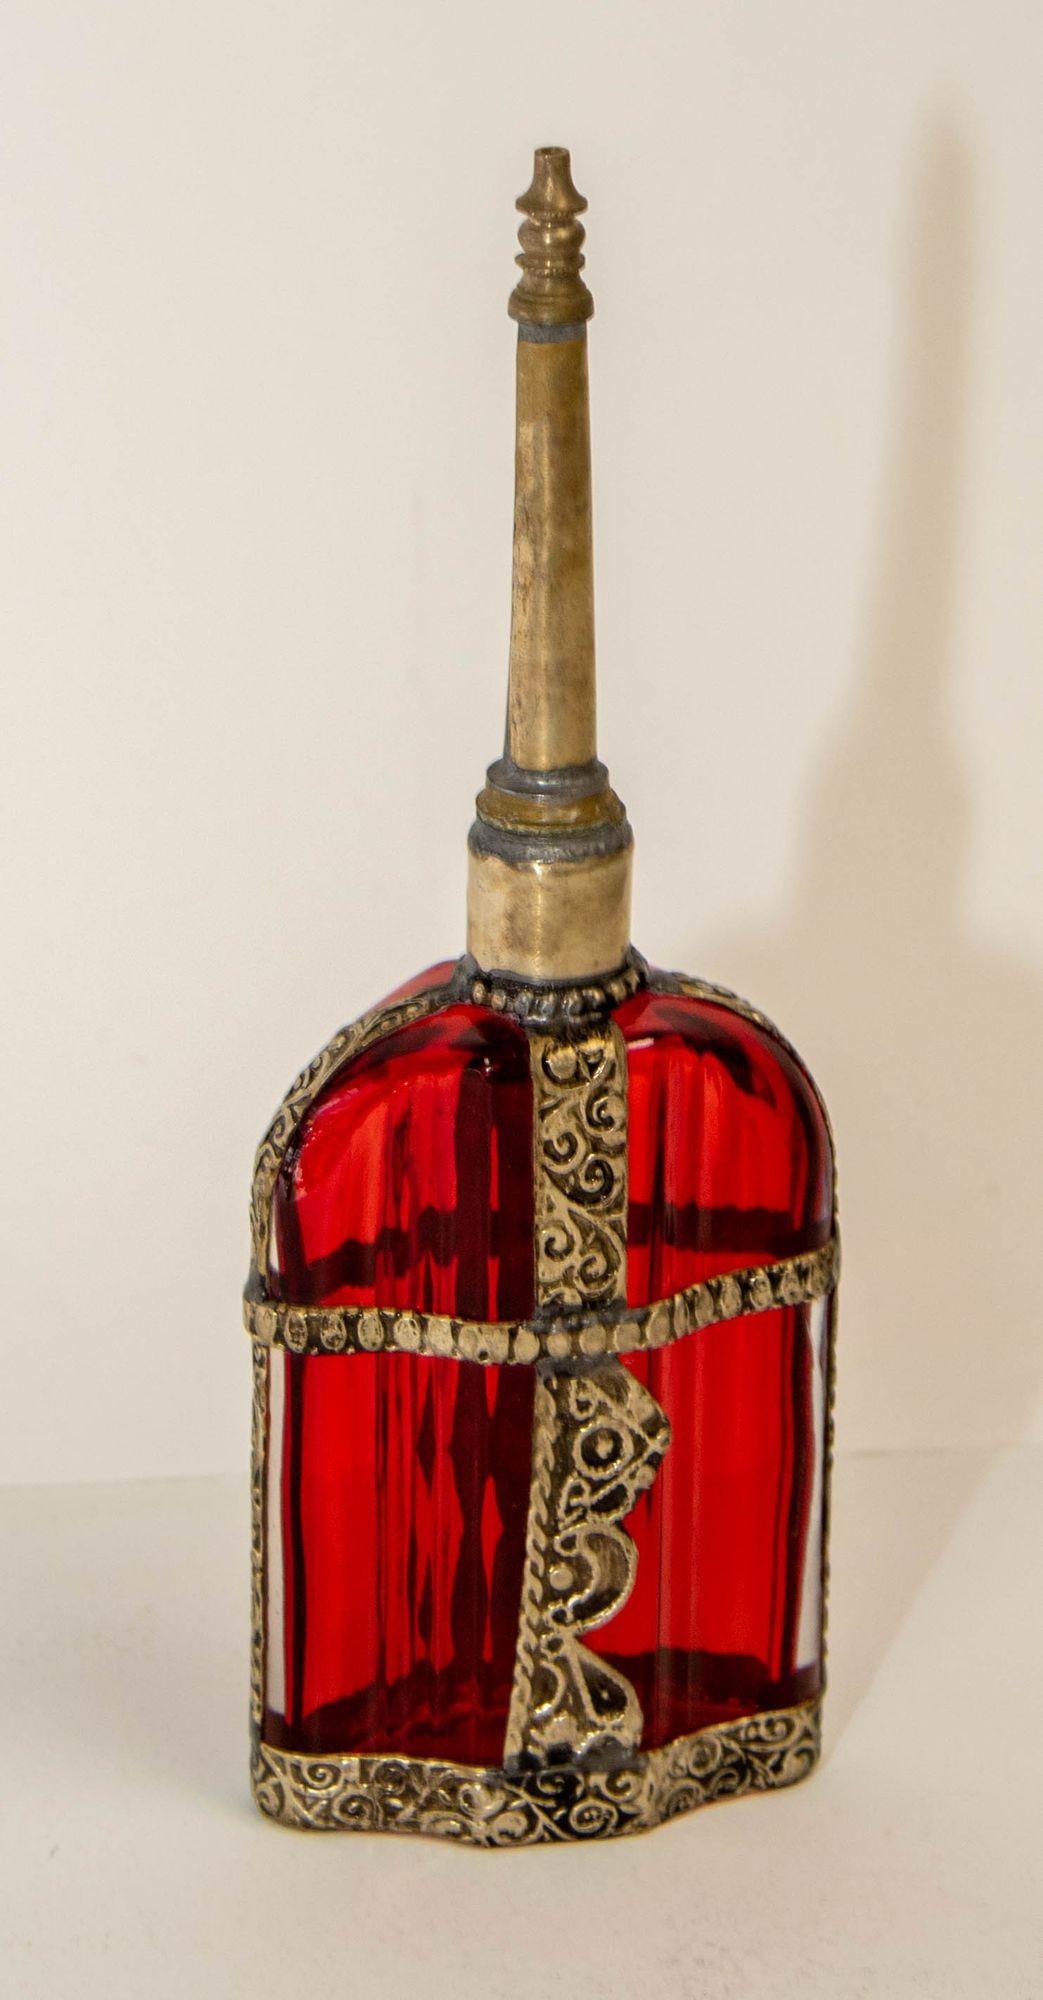 Bouteille de parfum décorative vintage en verre rouge marocain avec recouvrement en métal gaufré.
Bouteille de parfum ou aspersoir à eau de rose en verre peint rouge mauresque, fabriqué à la main, avec un motif floral en métal argenté en relief sur